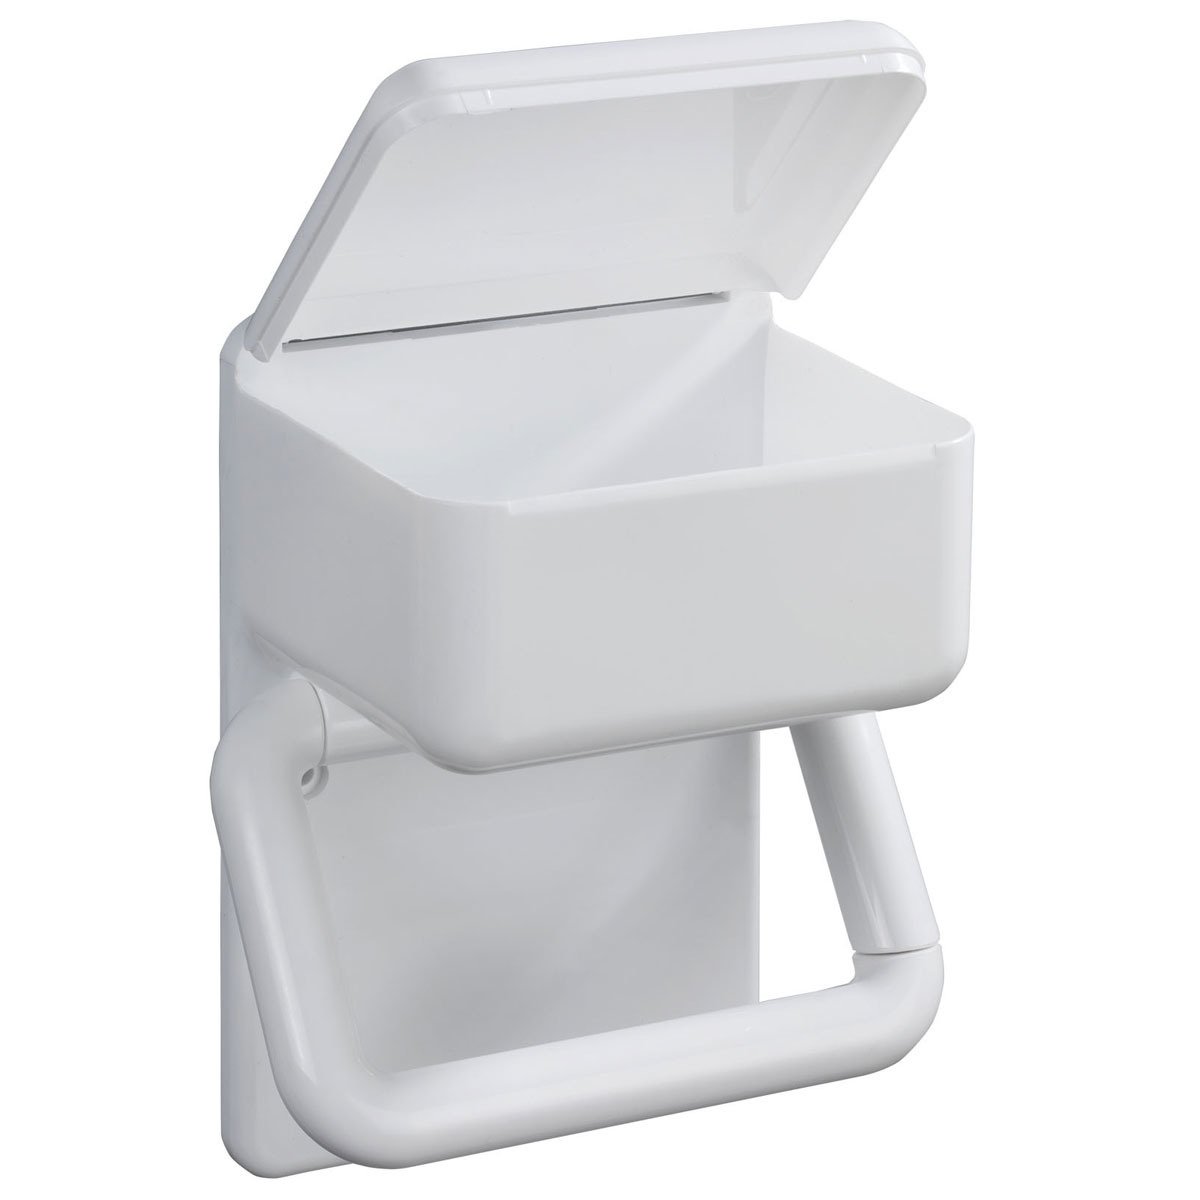 Toilettenpapierhalter 2 1 kaufen in | home24